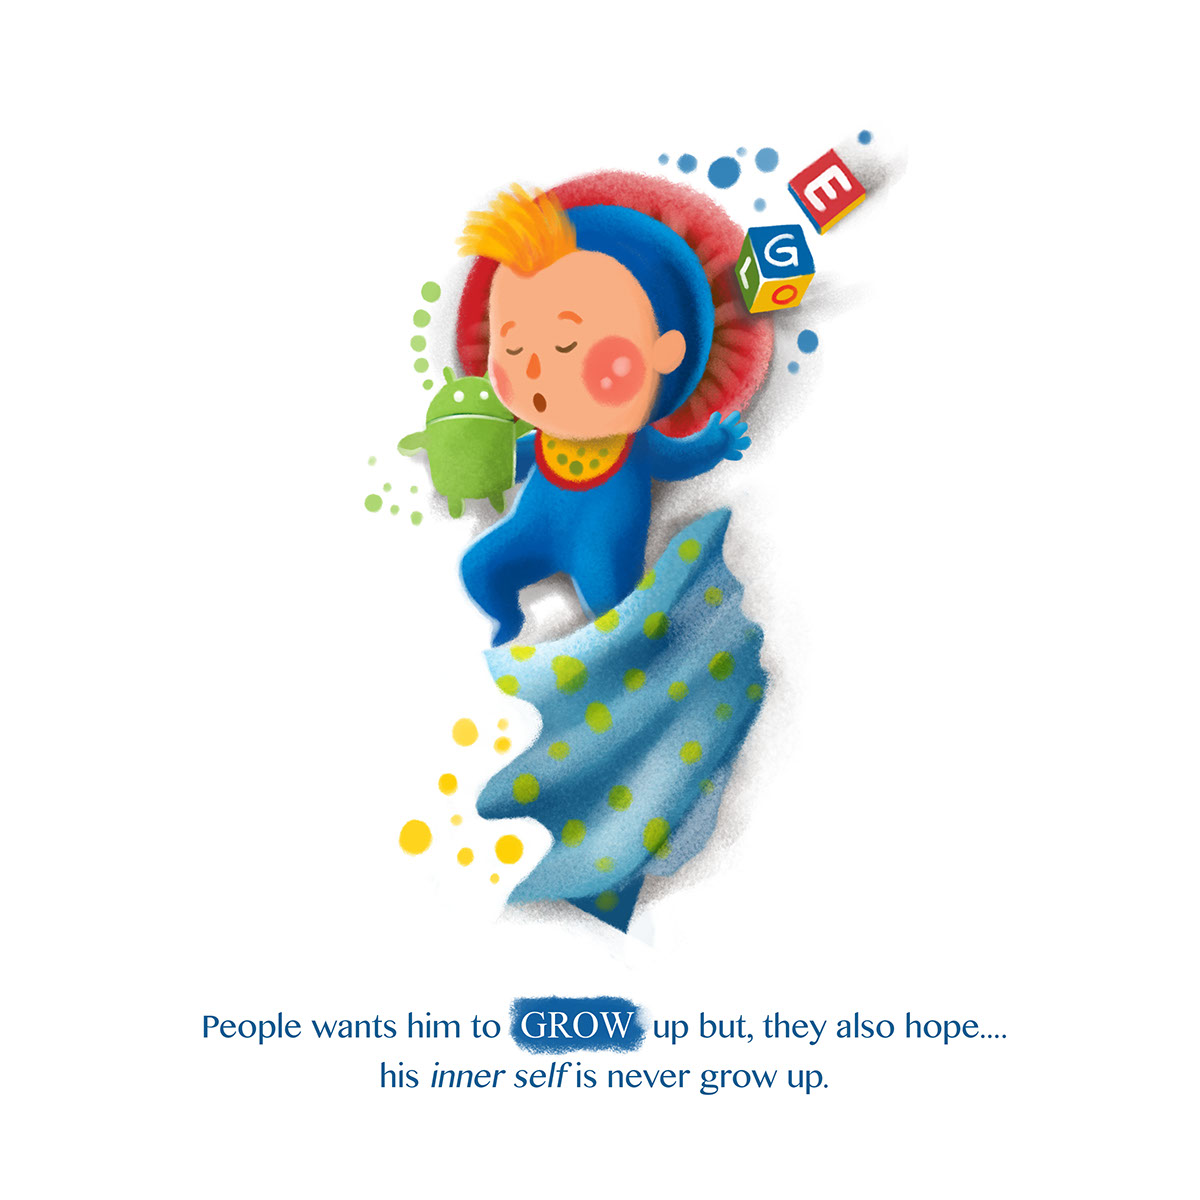 google Google Doodle papercaptain Digital storybook short story children